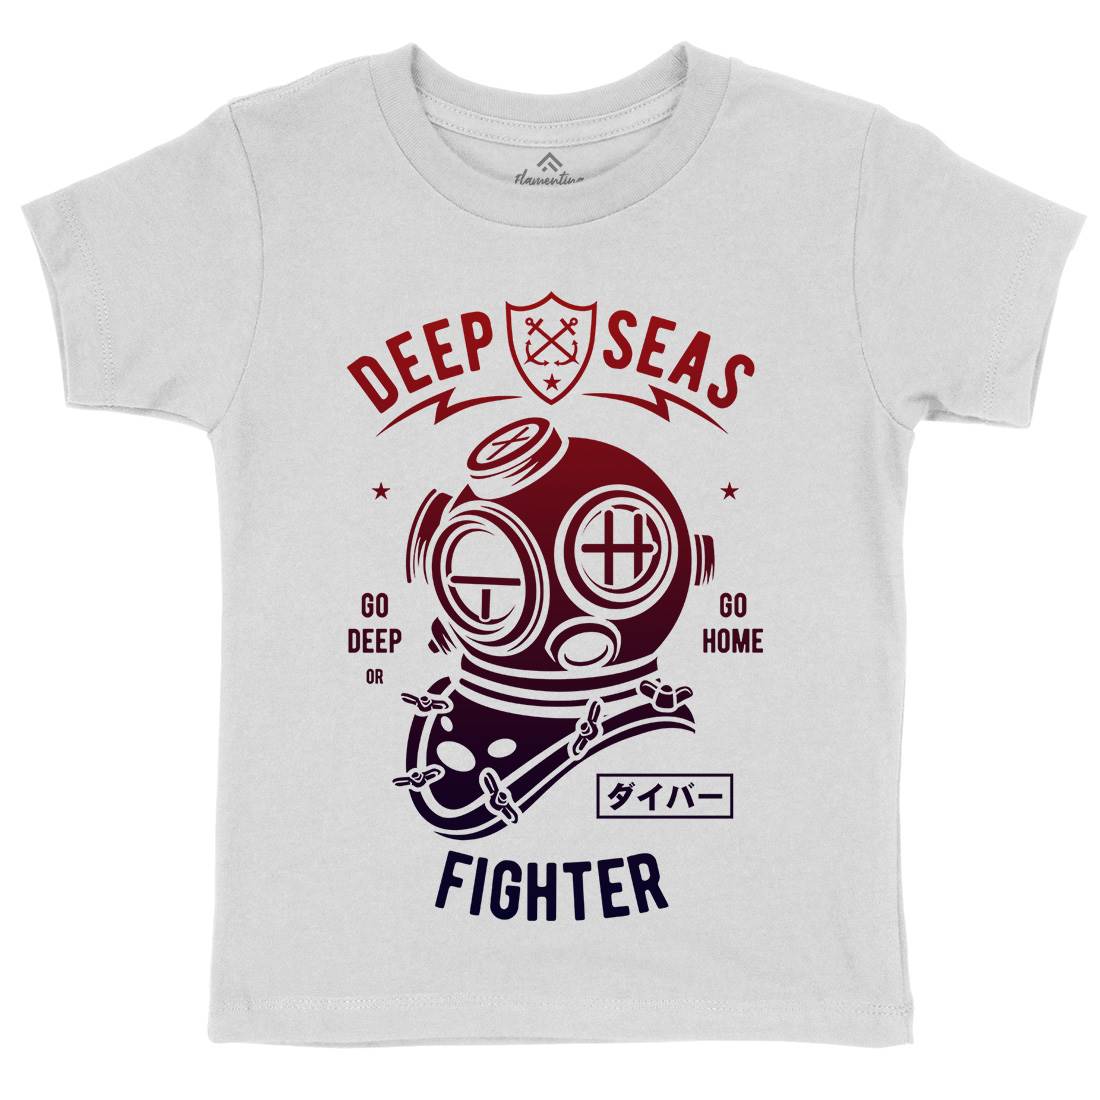 Deep Seas Fighter Kids Crew Neck T-Shirt Navy A223